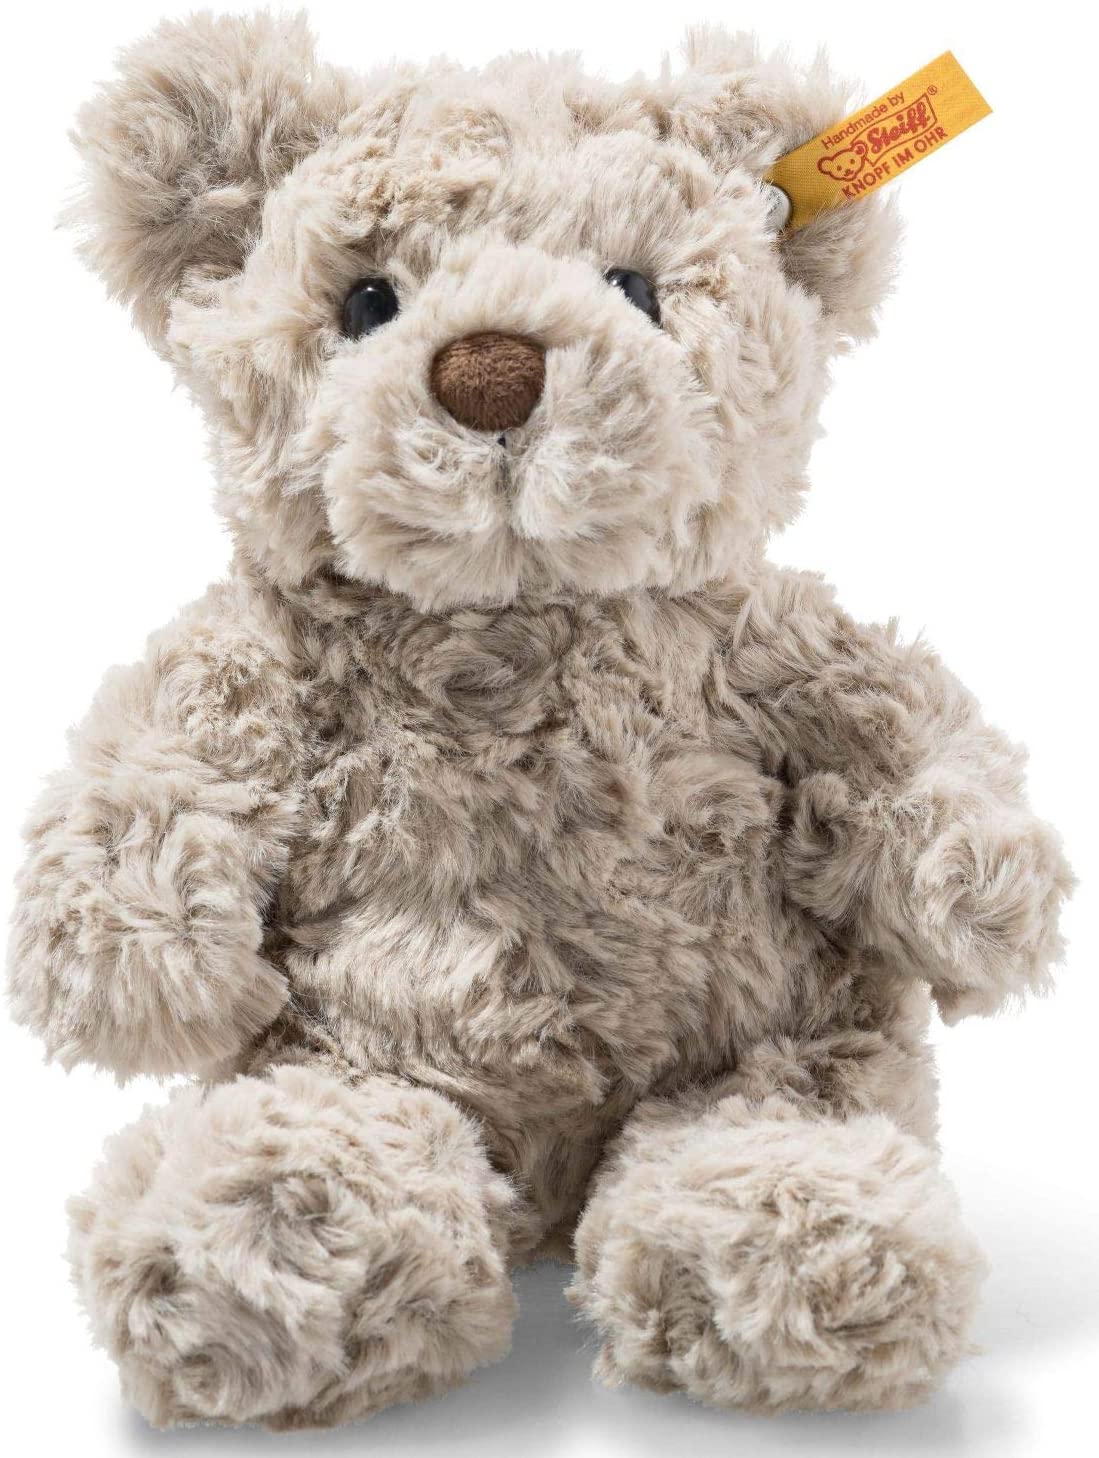 Bild zu Steiff Soft Cuddly Friends Teddybär Honey 18 cm für 13,99€ (Vergleich: 19,24€)